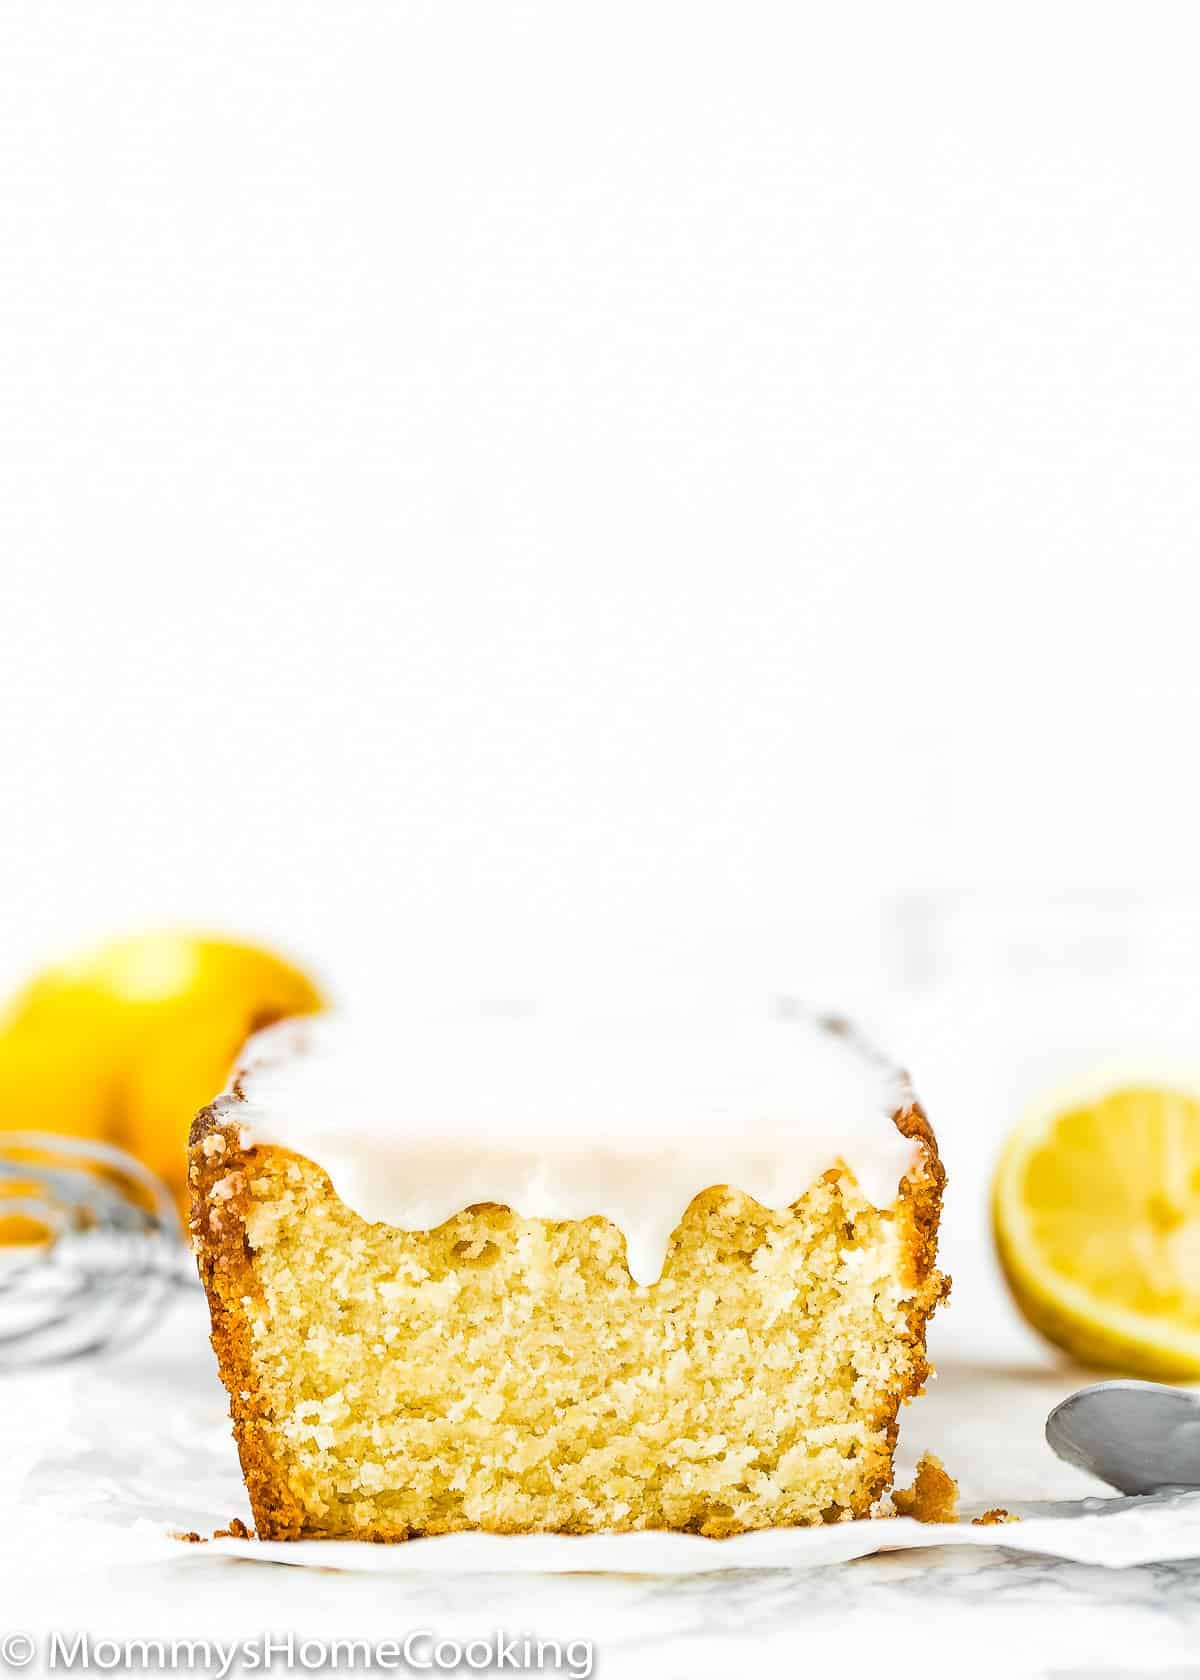 sliced Eggless Lemon Pound Cake with glaze and fresh lemons on the background.